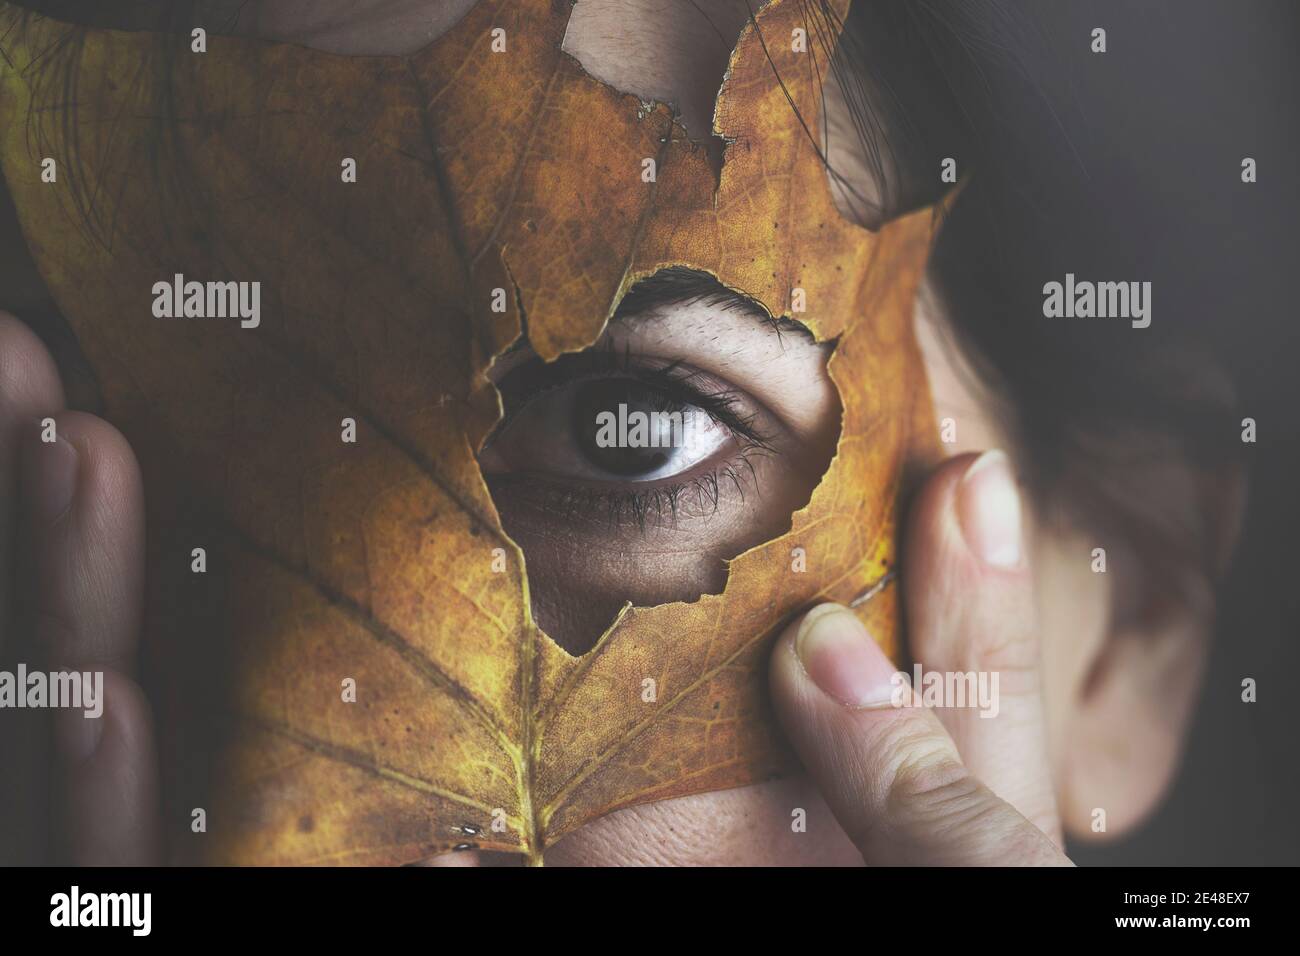 donna nasconde il suo volto con una foglia d'autunno, ritratto artistico e creativo Foto Stock